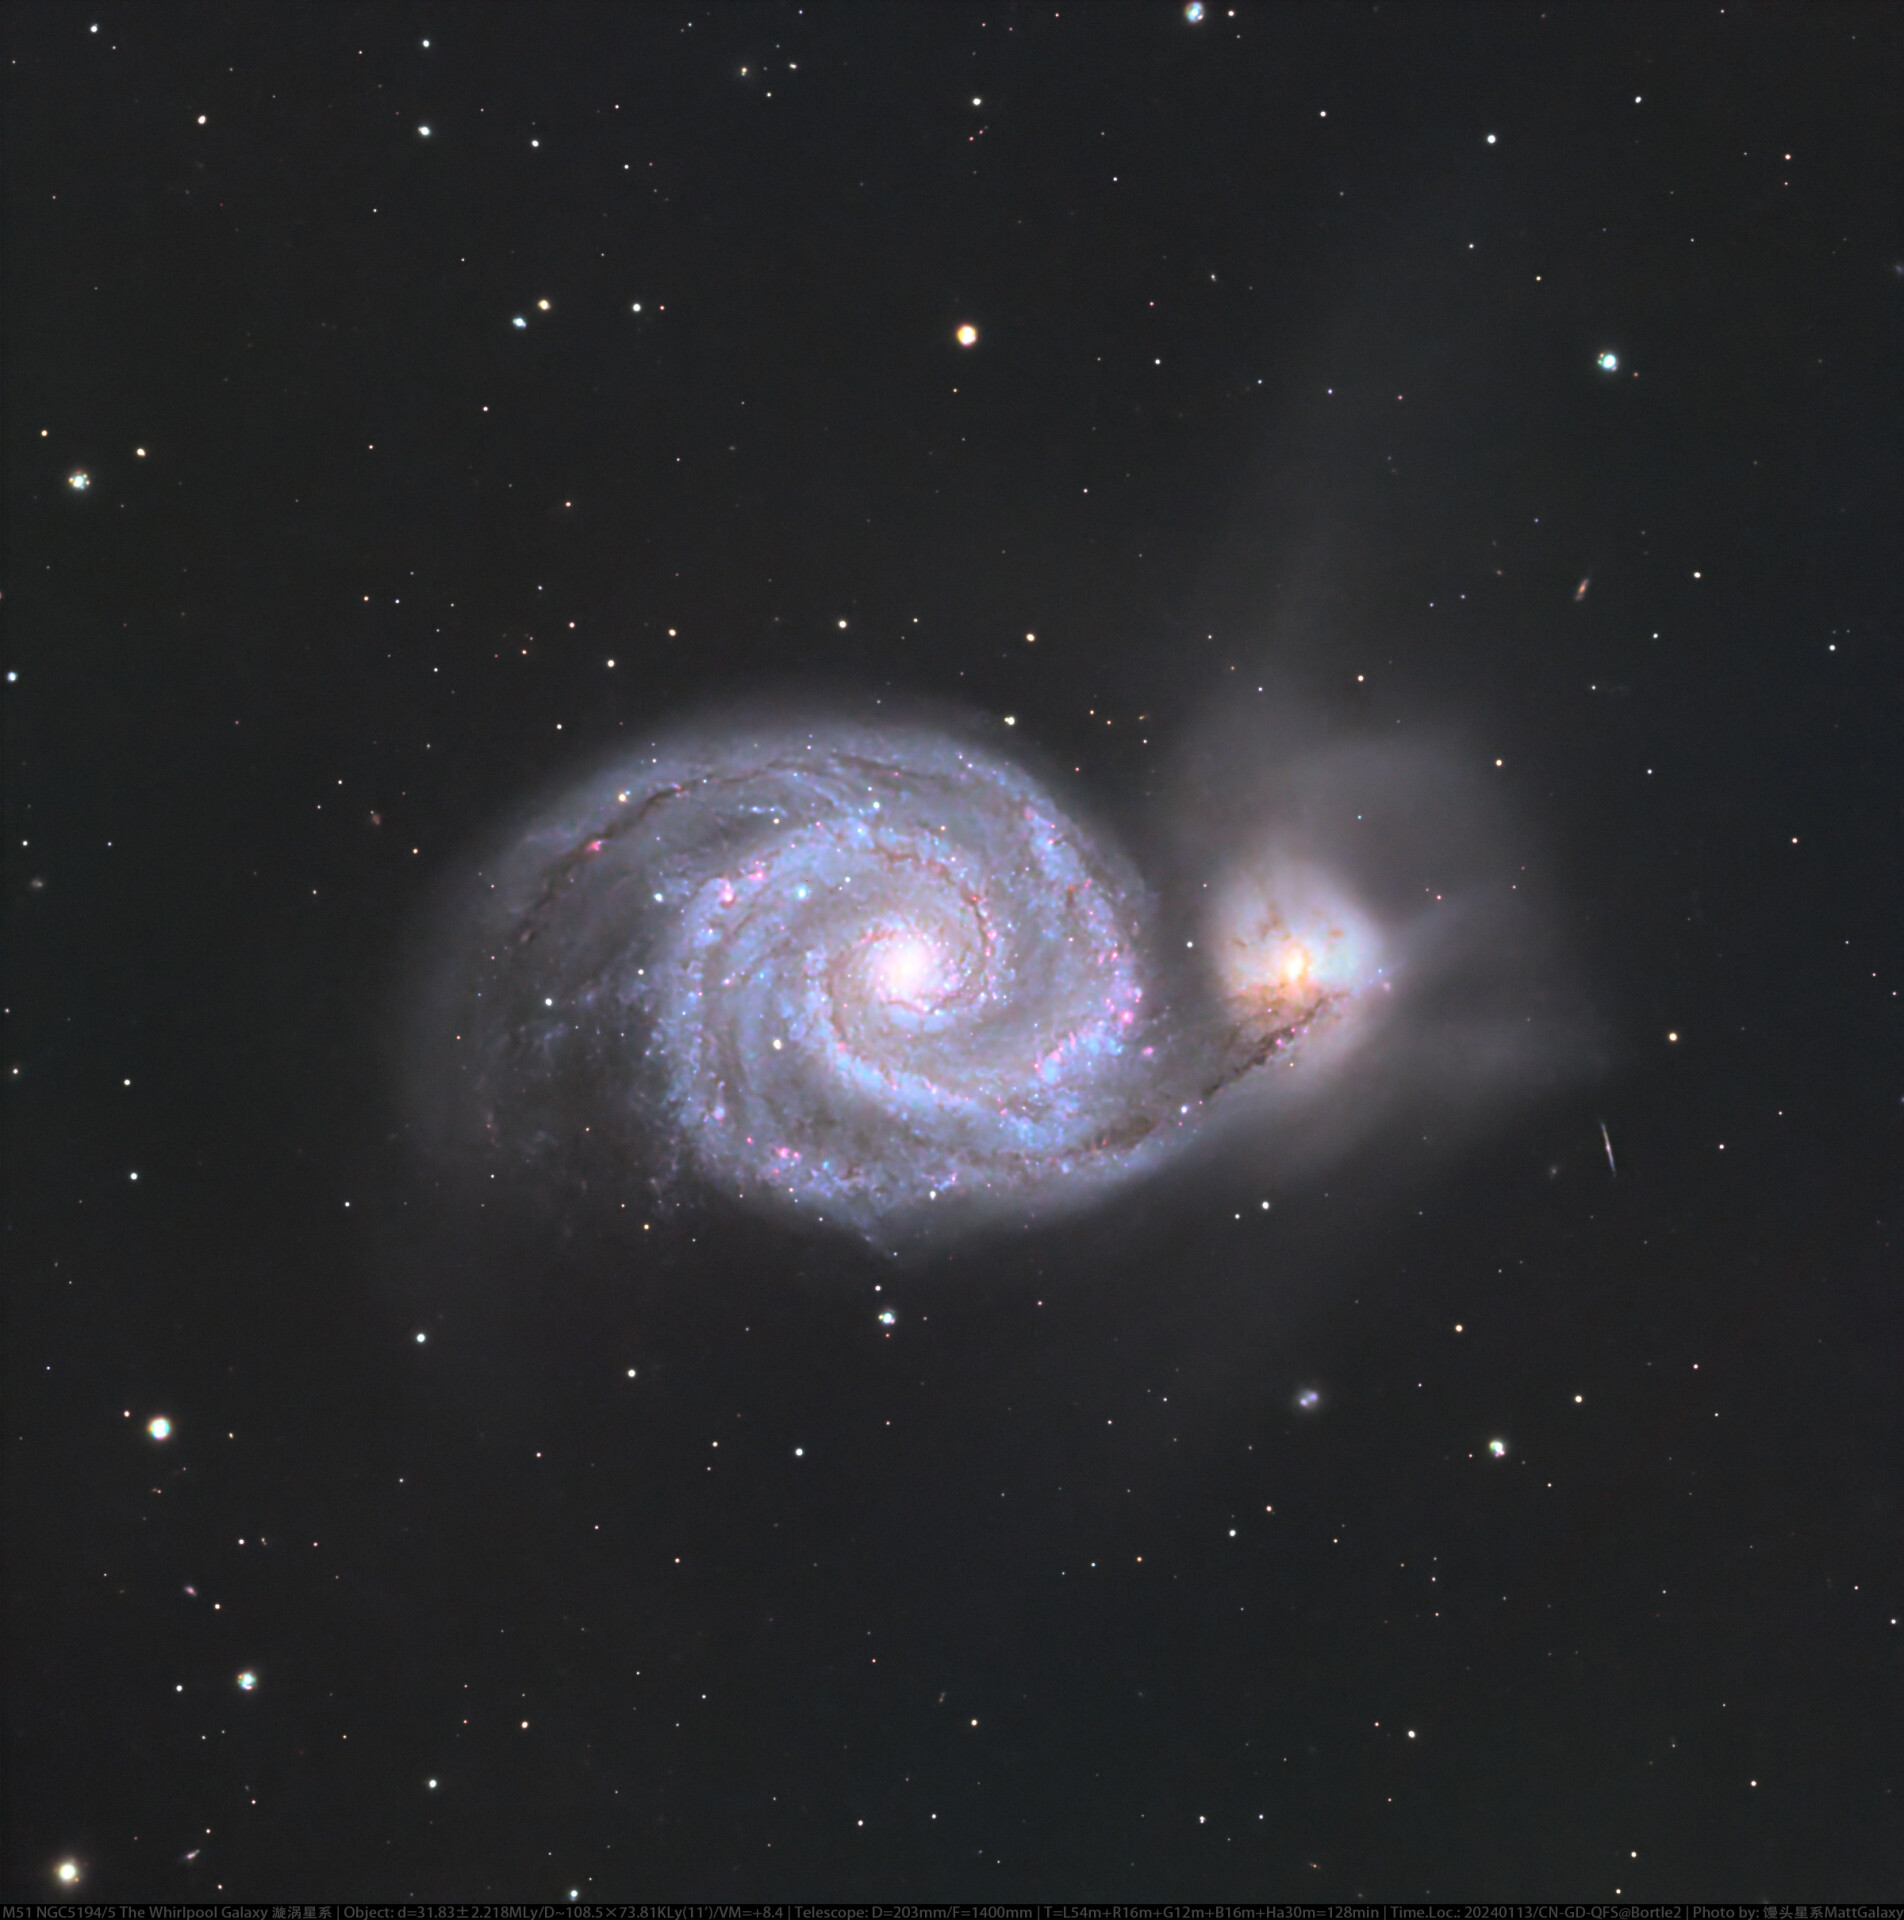 漩涡星系 M51 NGC5194/5 The Whirlpool Galaxy